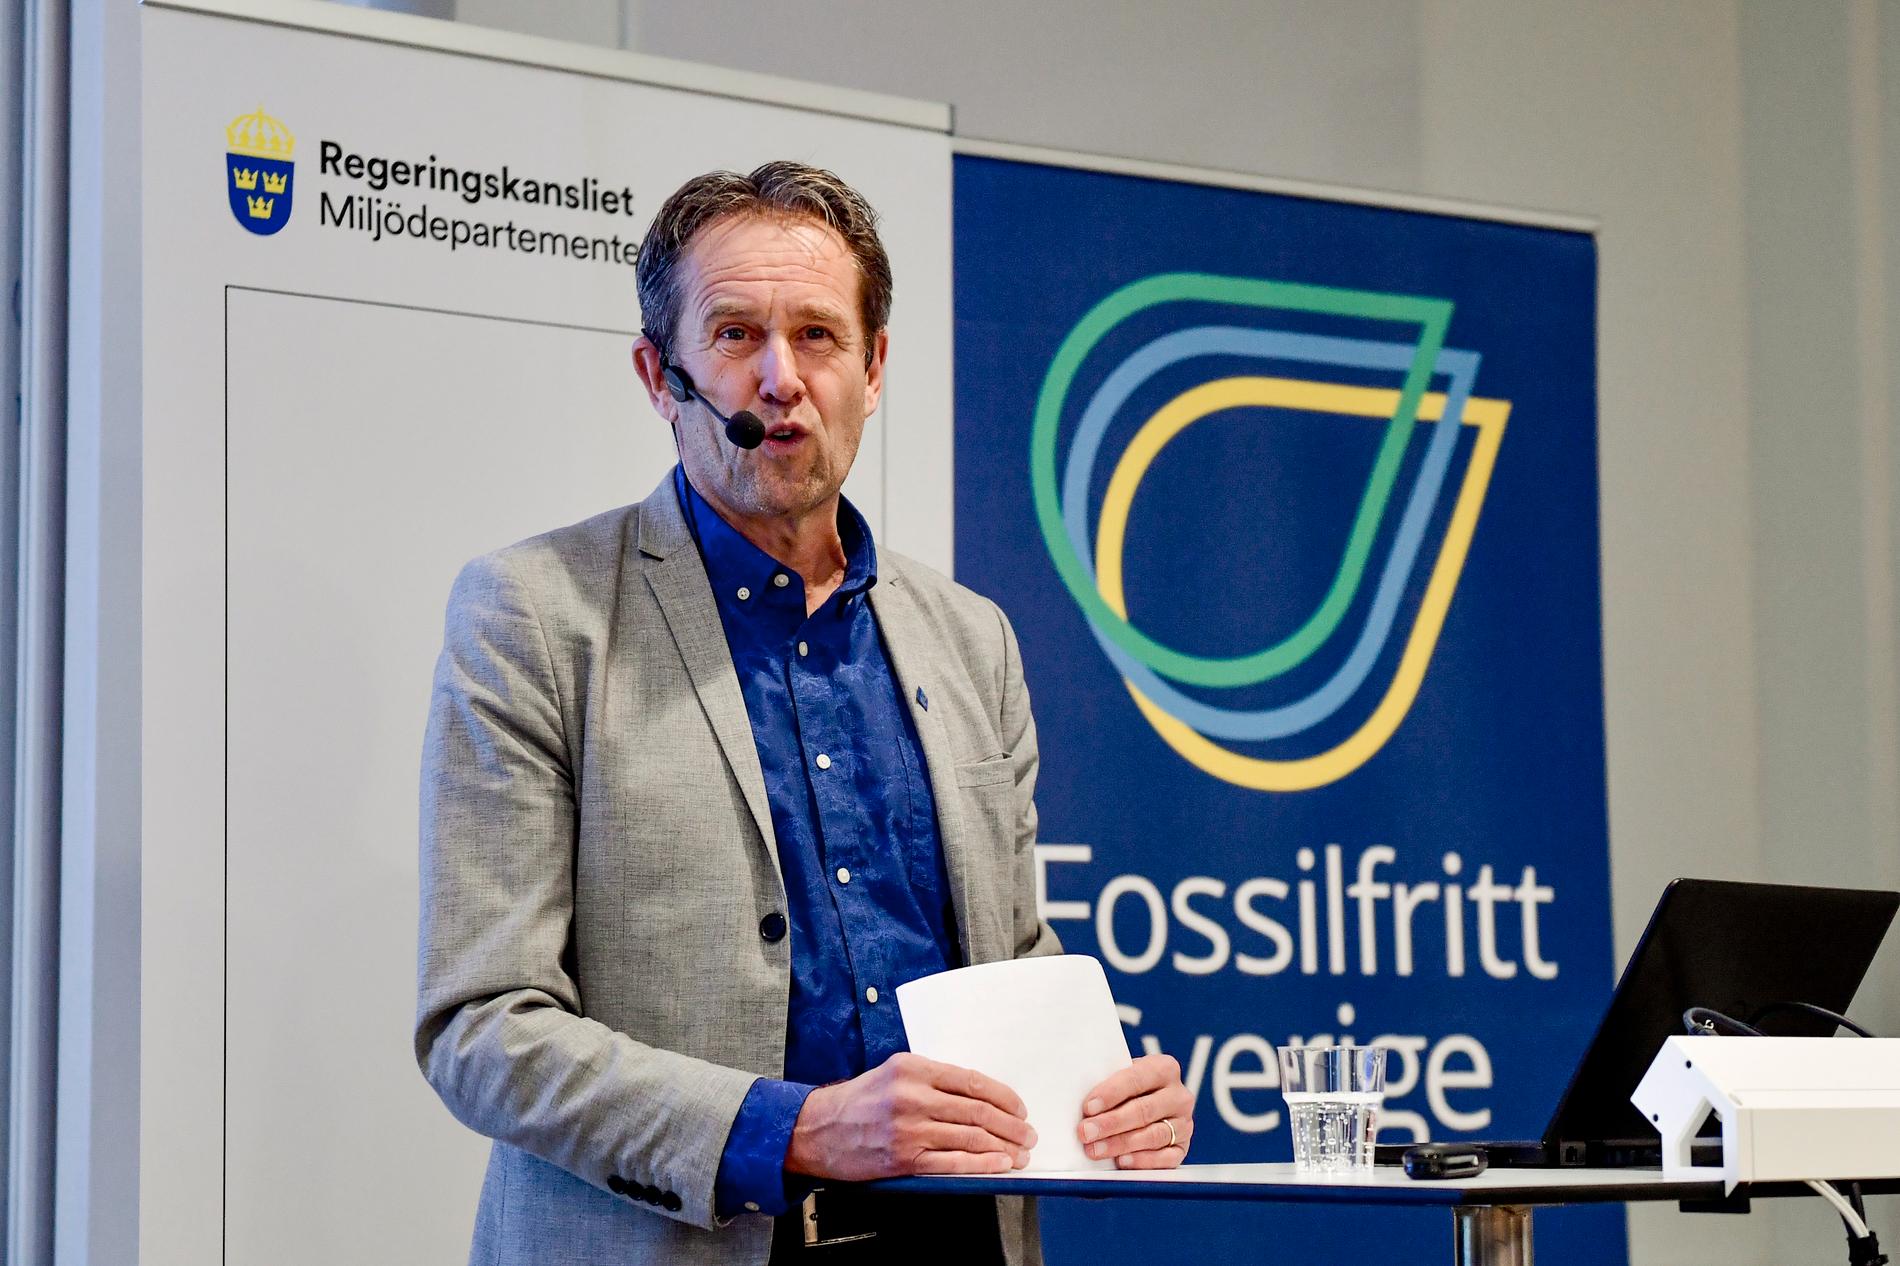 Svante Axelsson, nationell samordnare för Fossilfritt Sverige, som regeringen startade 2015 med syfte att öka takten i klimatomställningen. Arkivbild.